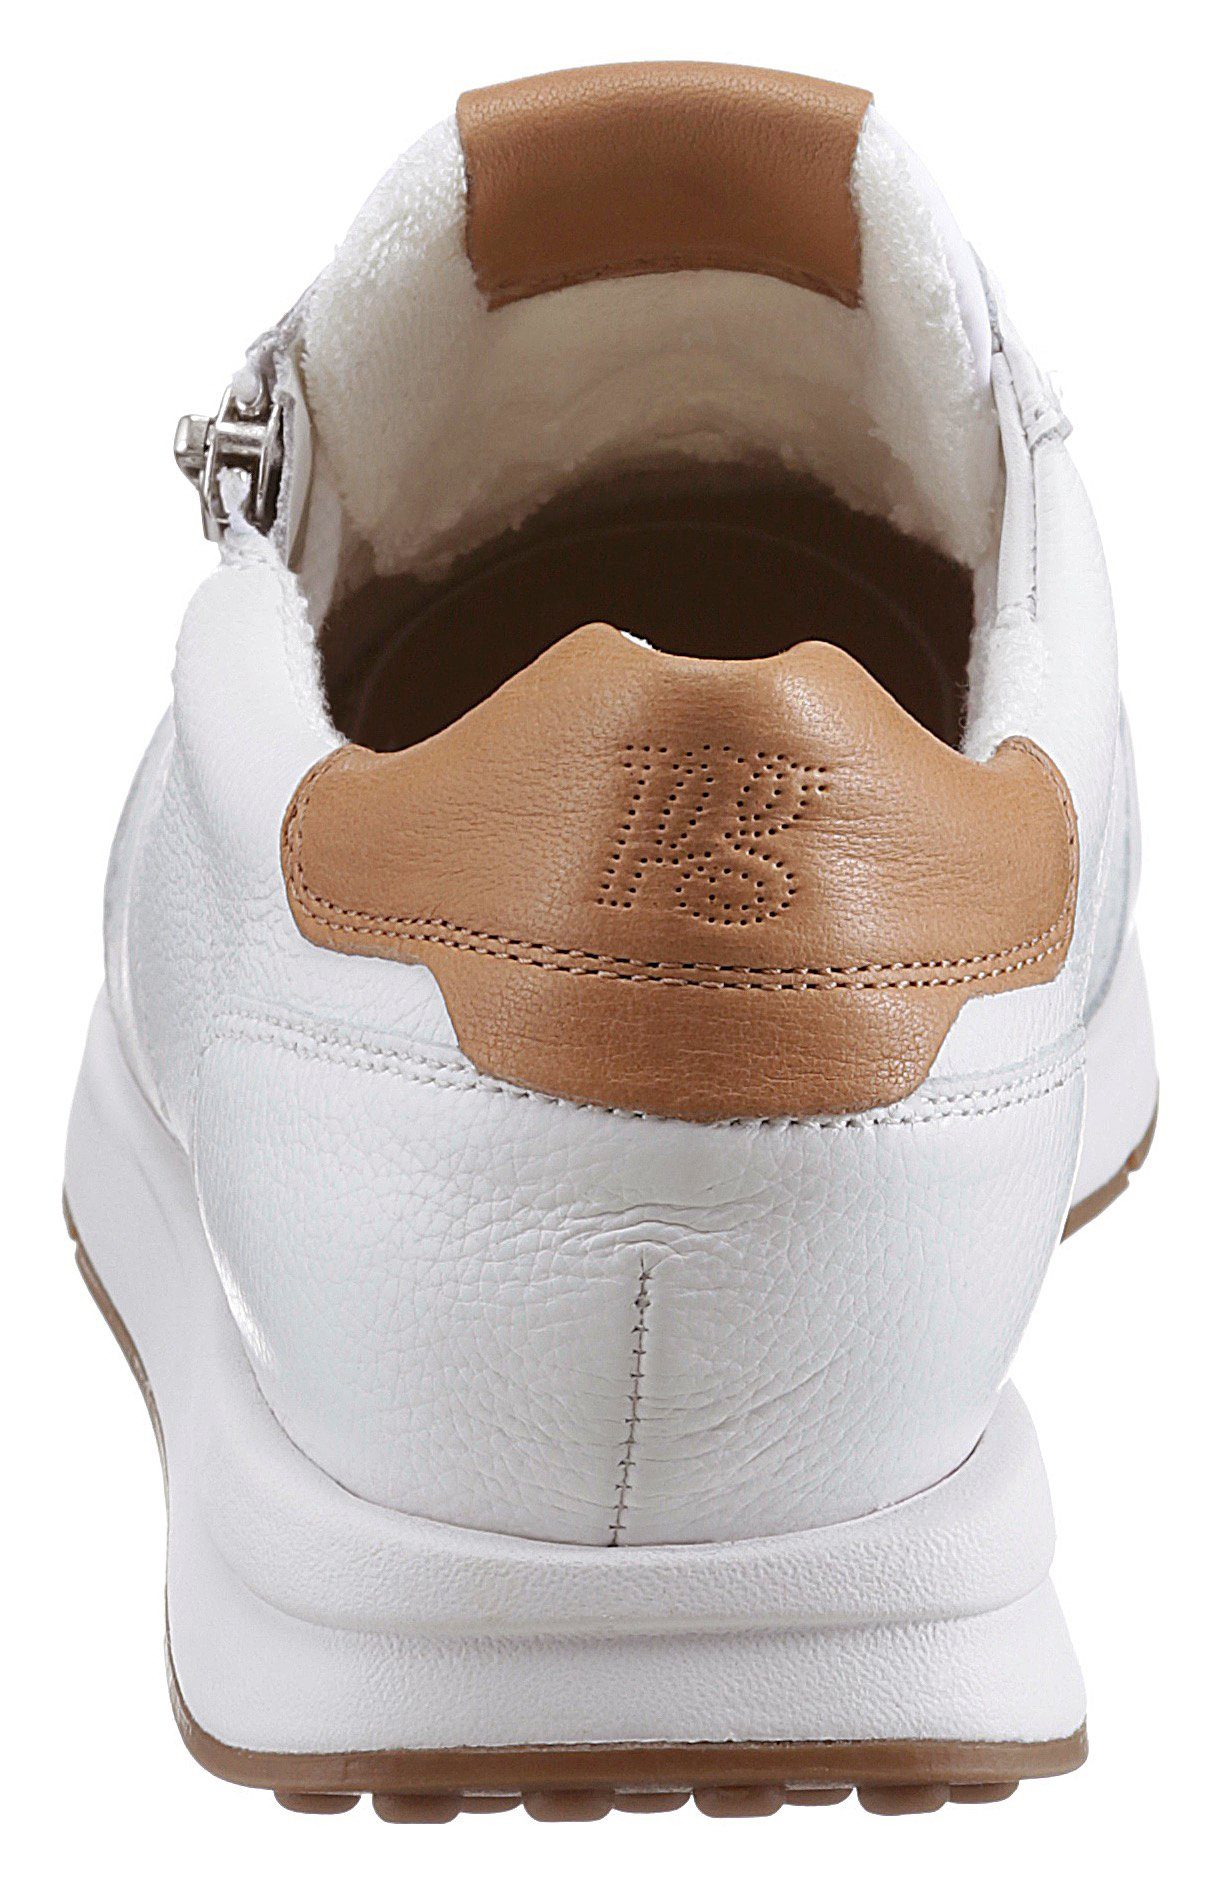 Paul Green Sneaker mit dezenten Kontrast-Details weiß-curryfarben